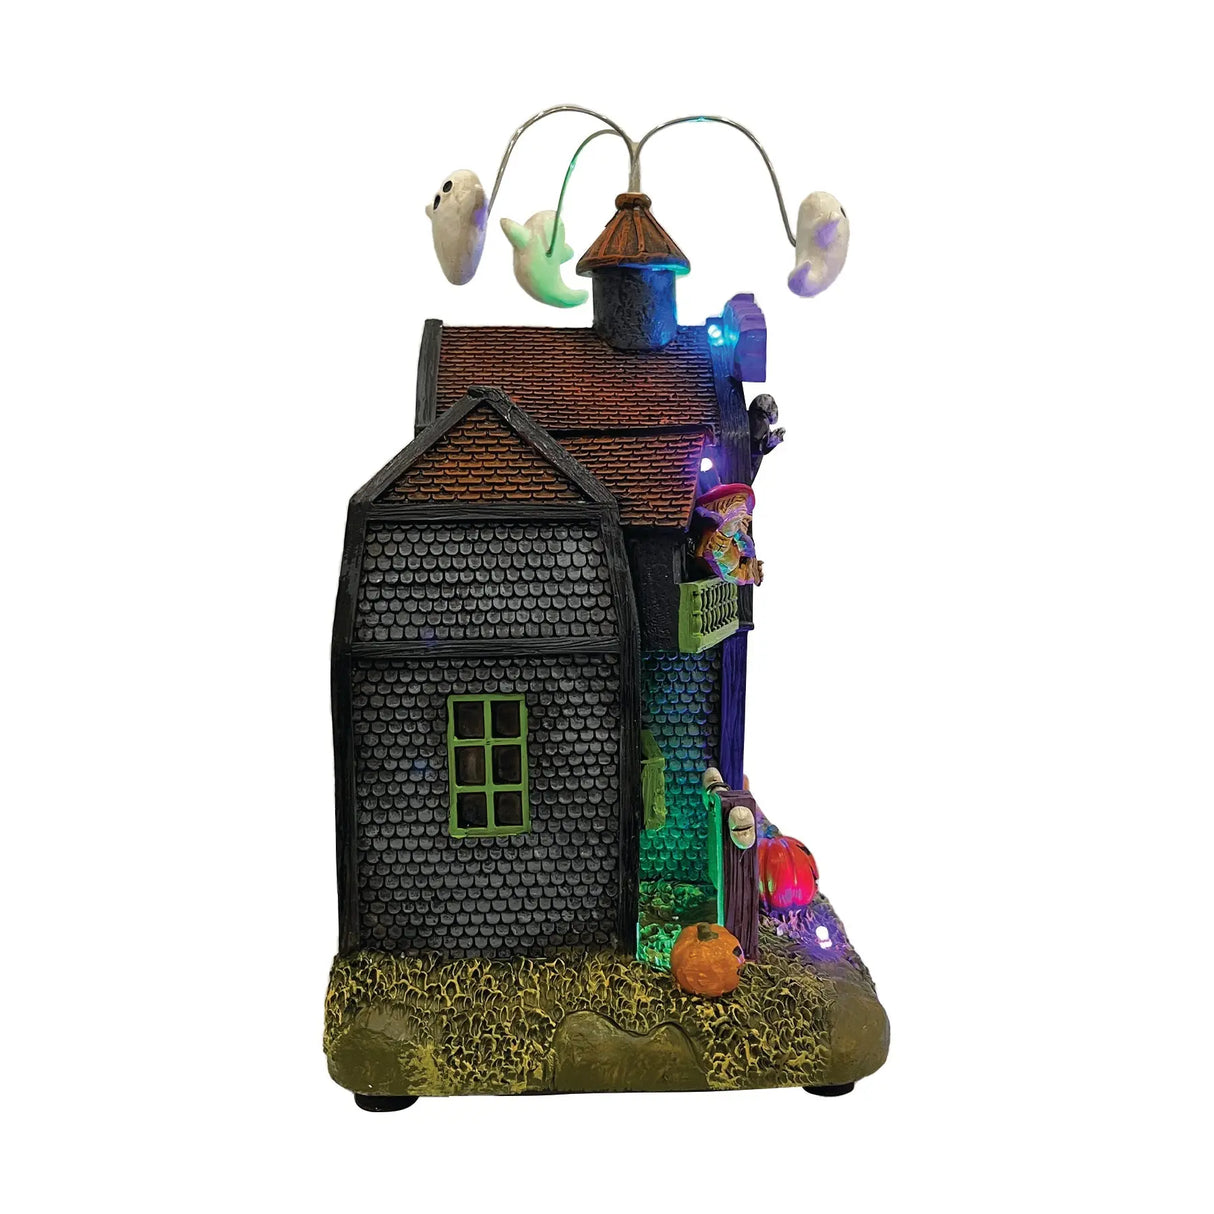 Animated Fun House fgsquarevillage